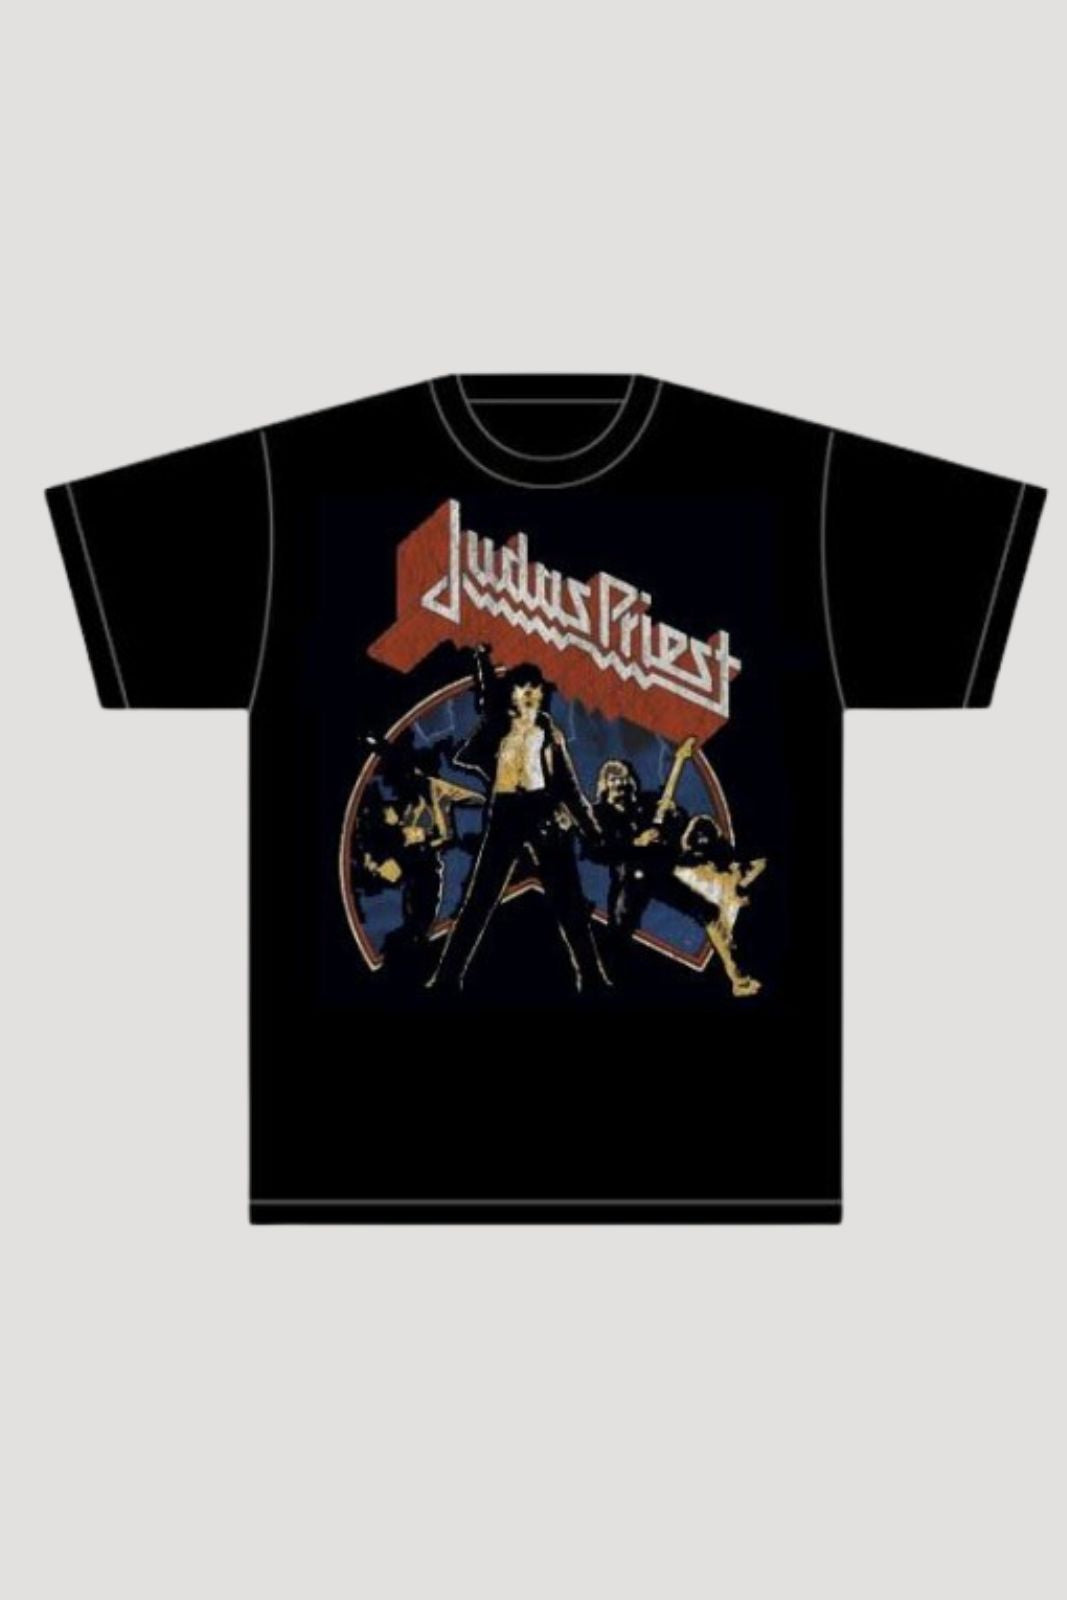 Licensed Judas Priest Unleashed shirt men women